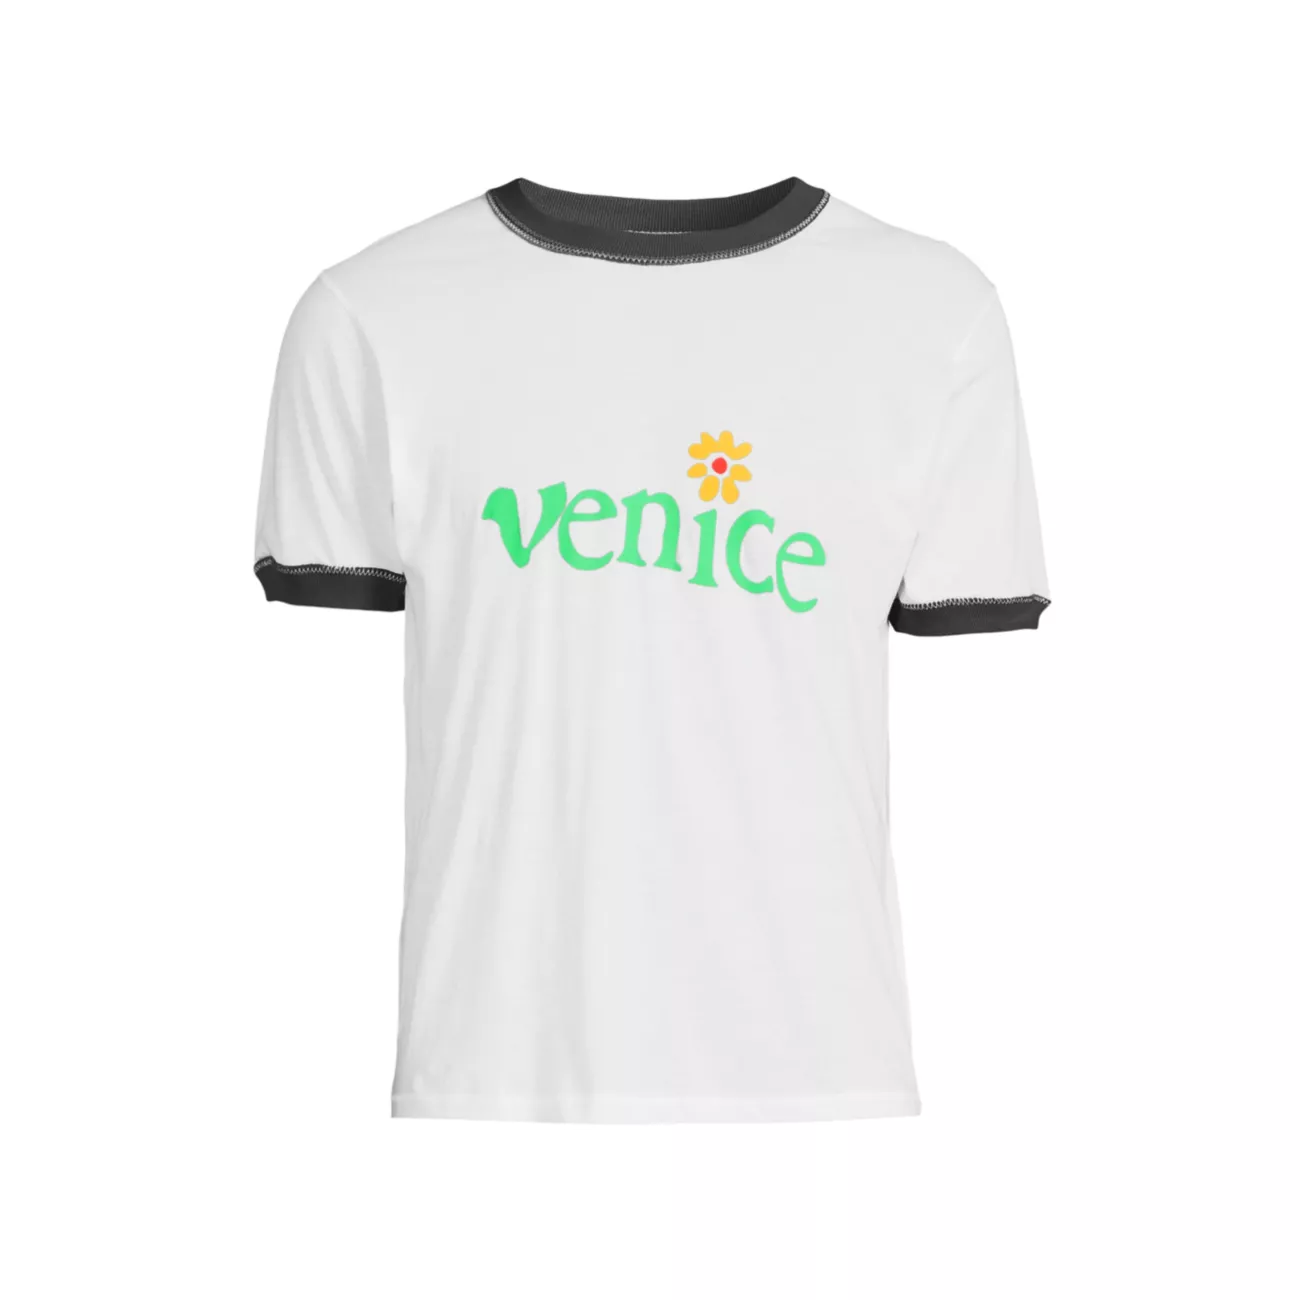 Venice Cotton T-Shirt ERL